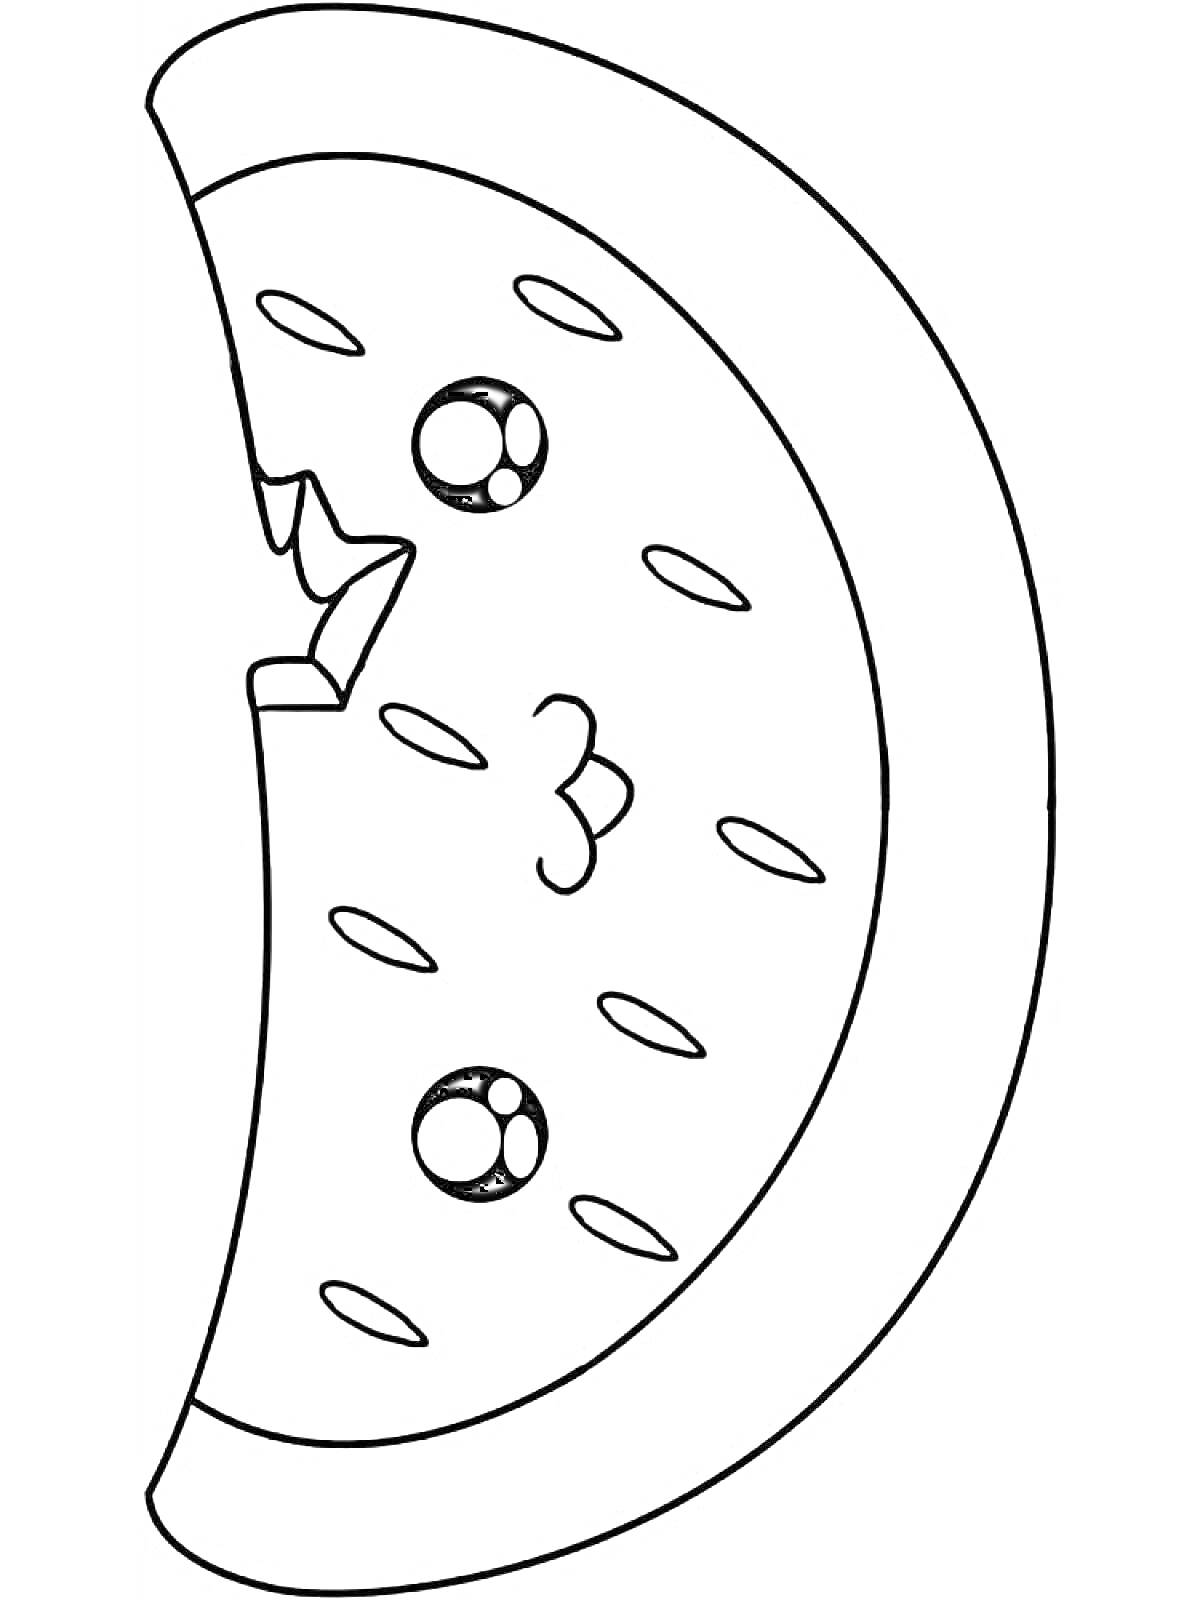 РаскраскаКавайный ломтик арбуза с глазами и ртом